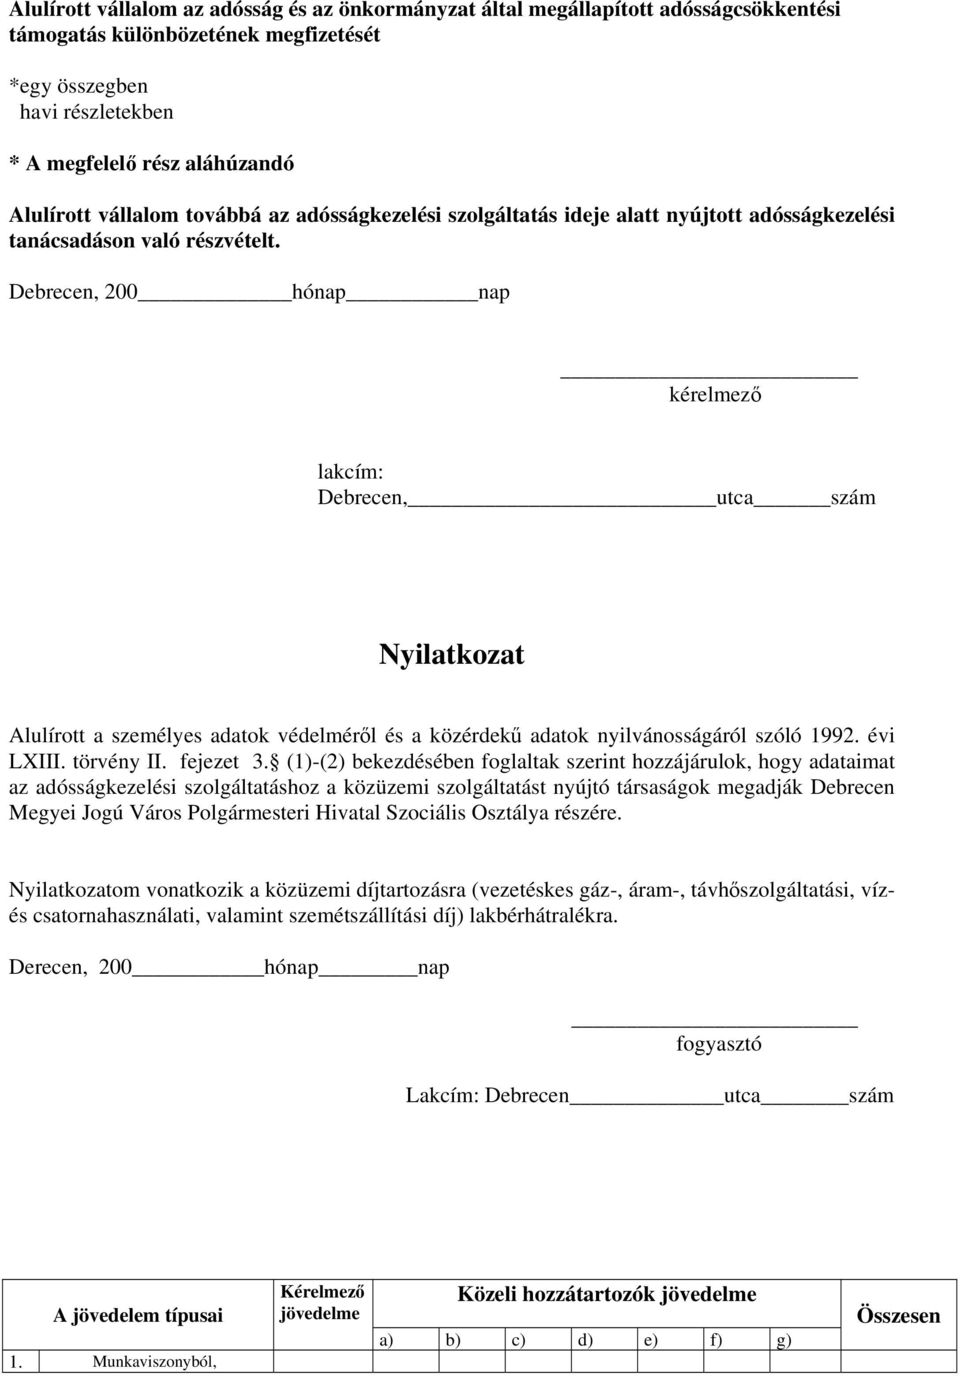 Debrecen, 200hónap nap lakcím: Debrecen,utca szám Nyilatkozat Alulírott a személyes adatok védelméről és a közérdekű adatok nyilvánosságáról szóló 1992. évi LXIII. törvény II. fejezet 3.